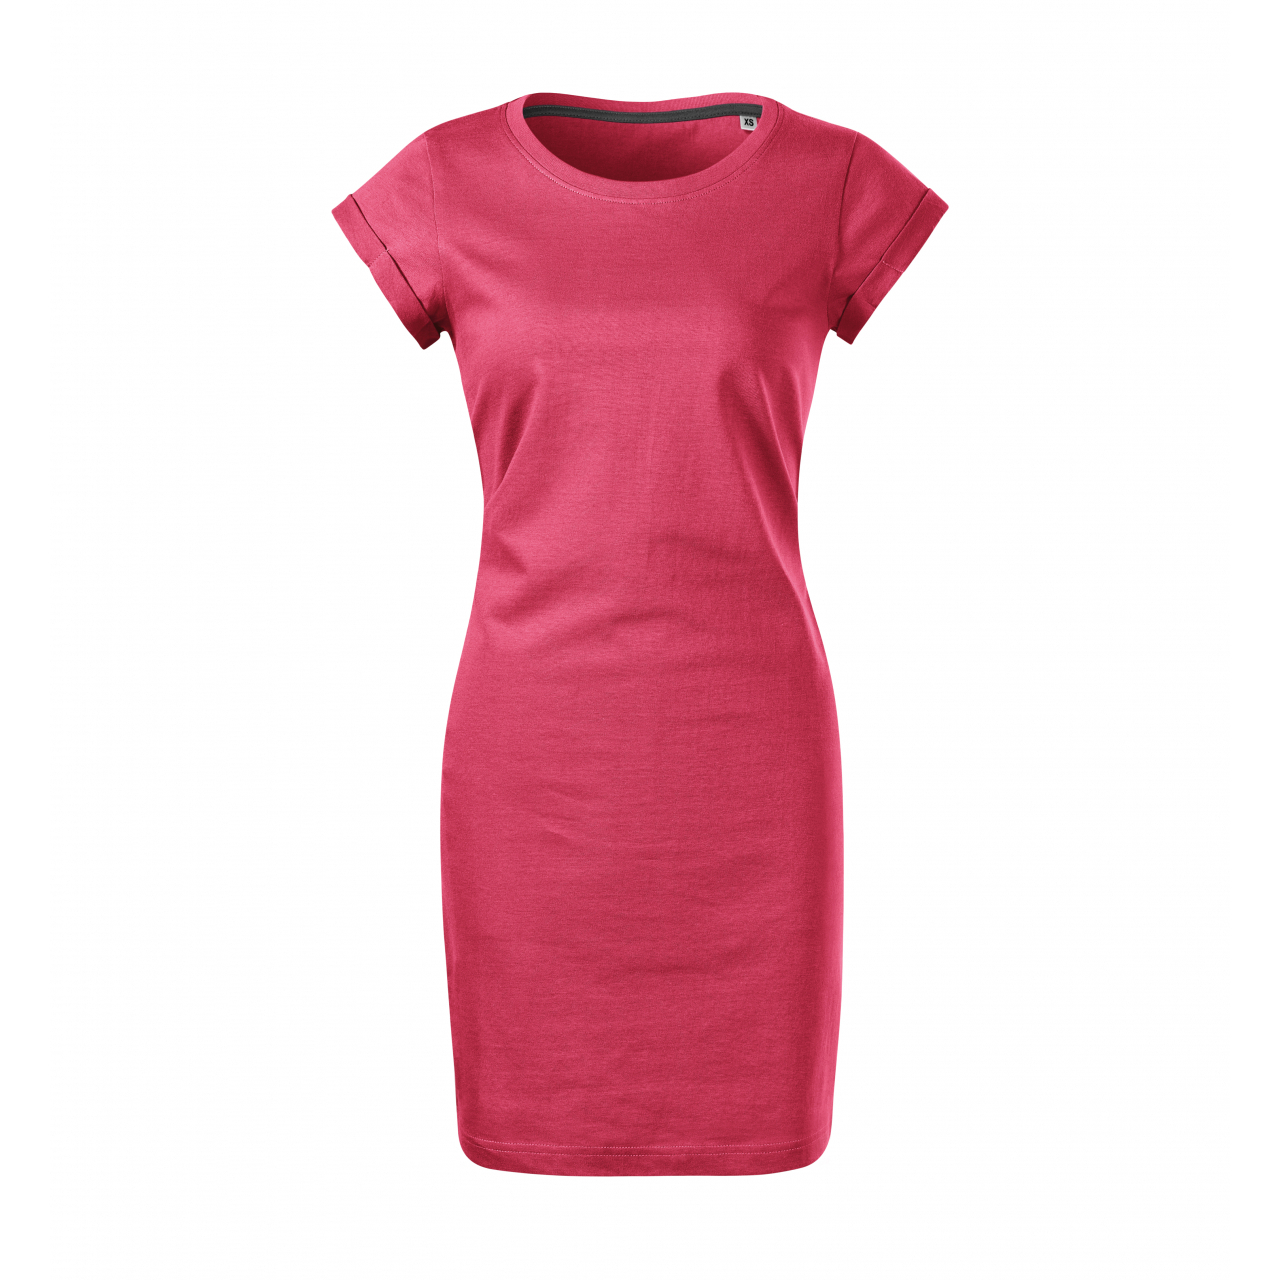 Šaty dámské Malfini Freedom - růžové, S